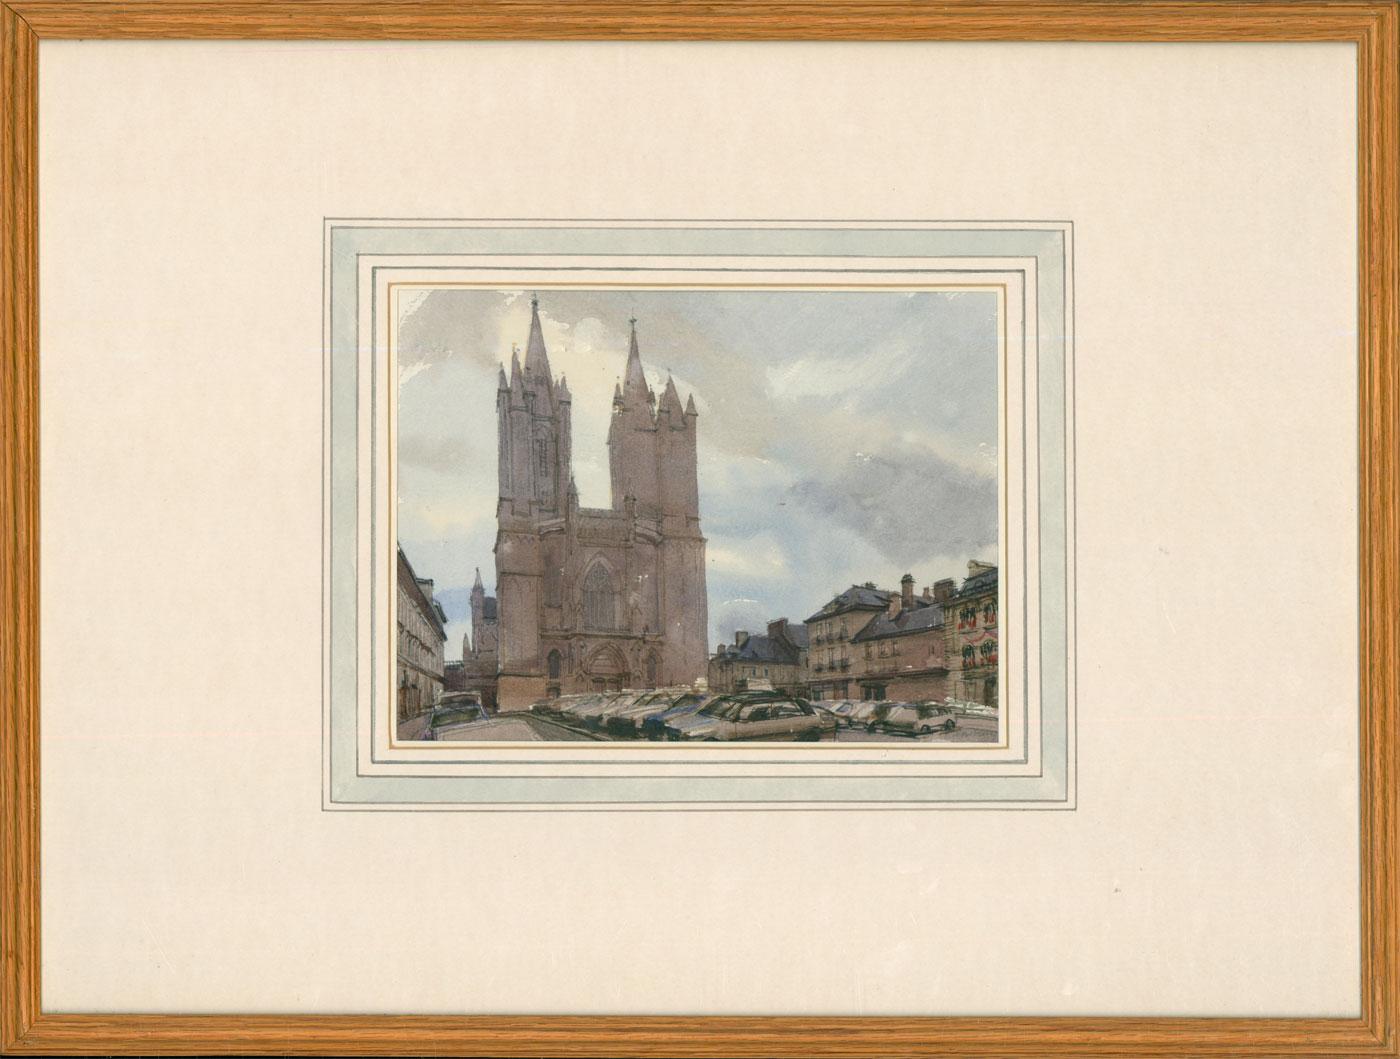 Eine beeindruckende perspektivische Studie der Kathedrale von Coutances, gemalt in Aquarellfarben von dem britischen Künstler John Newberry (geb. 1934). Signiert in Graphit unten rechts. Präsentiert in einem schmalen Eichenrahmen mit